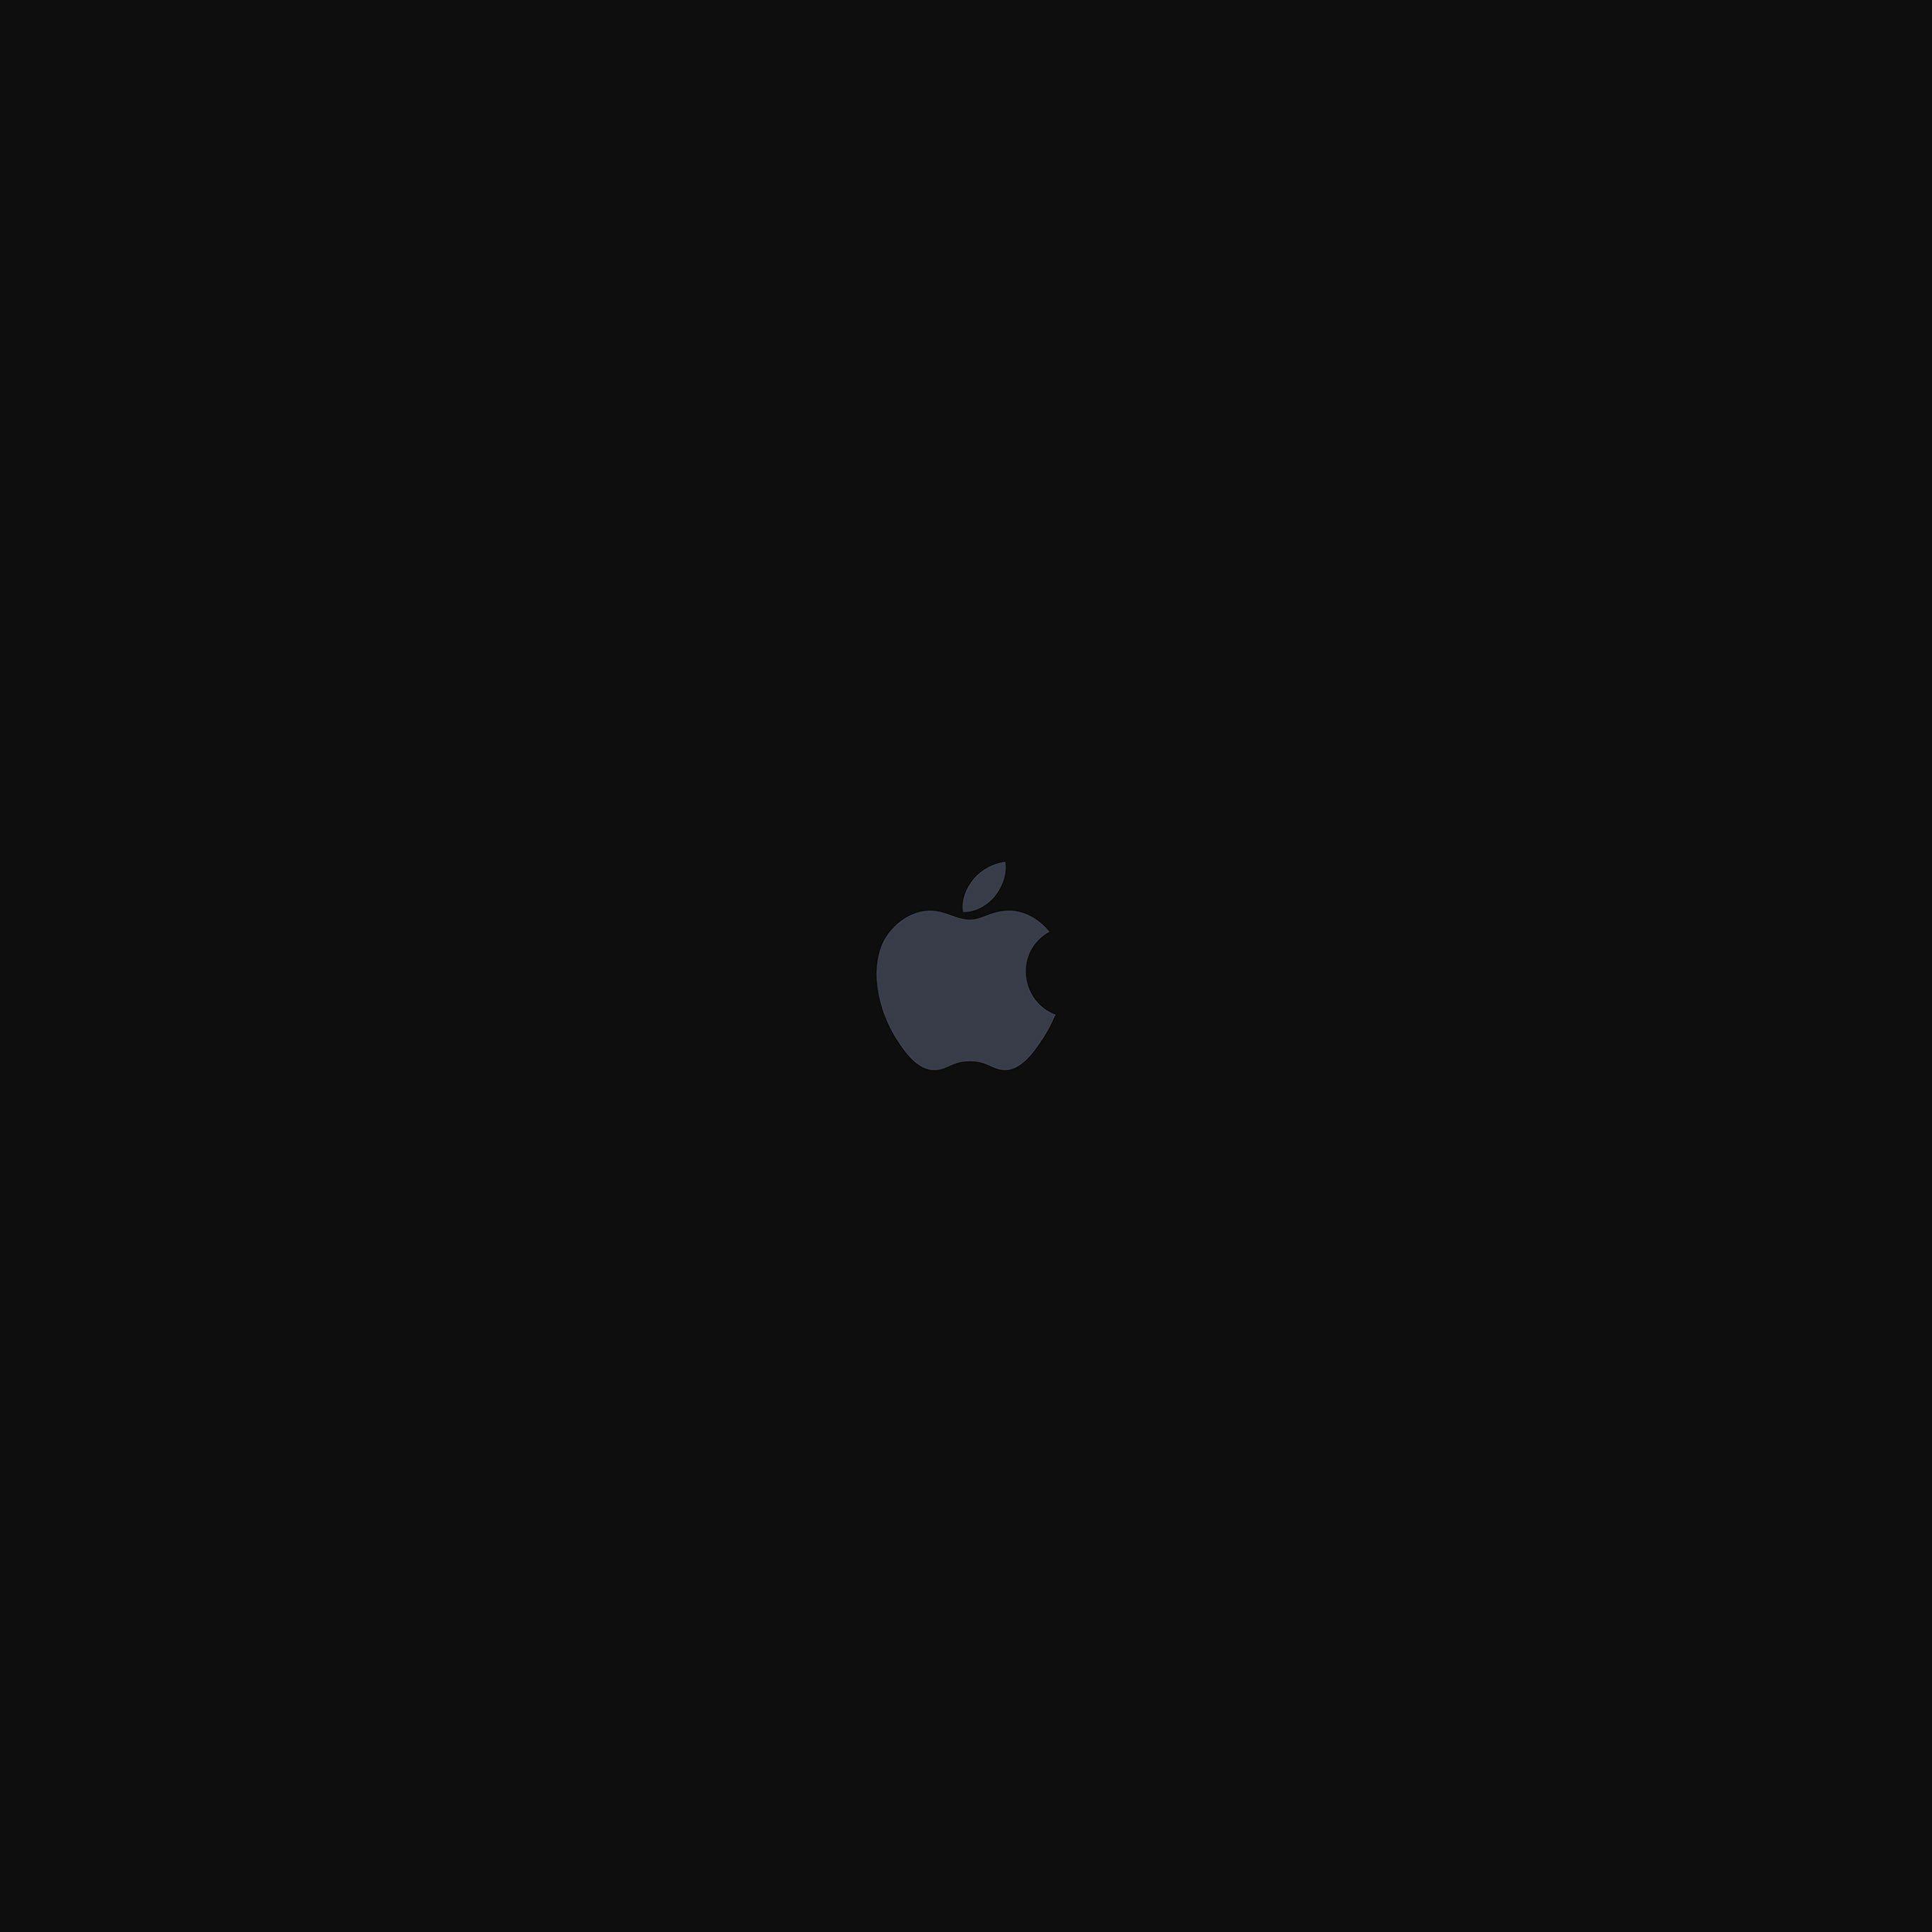 Mã hoa quả táo của Apple trên nền đen thật đẹp mắt và sang trọng. Hãy cùng chiêm ngưỡng hình ảnh để tận hưởng sự hoàn hảo của thiết kế độc đáo này.